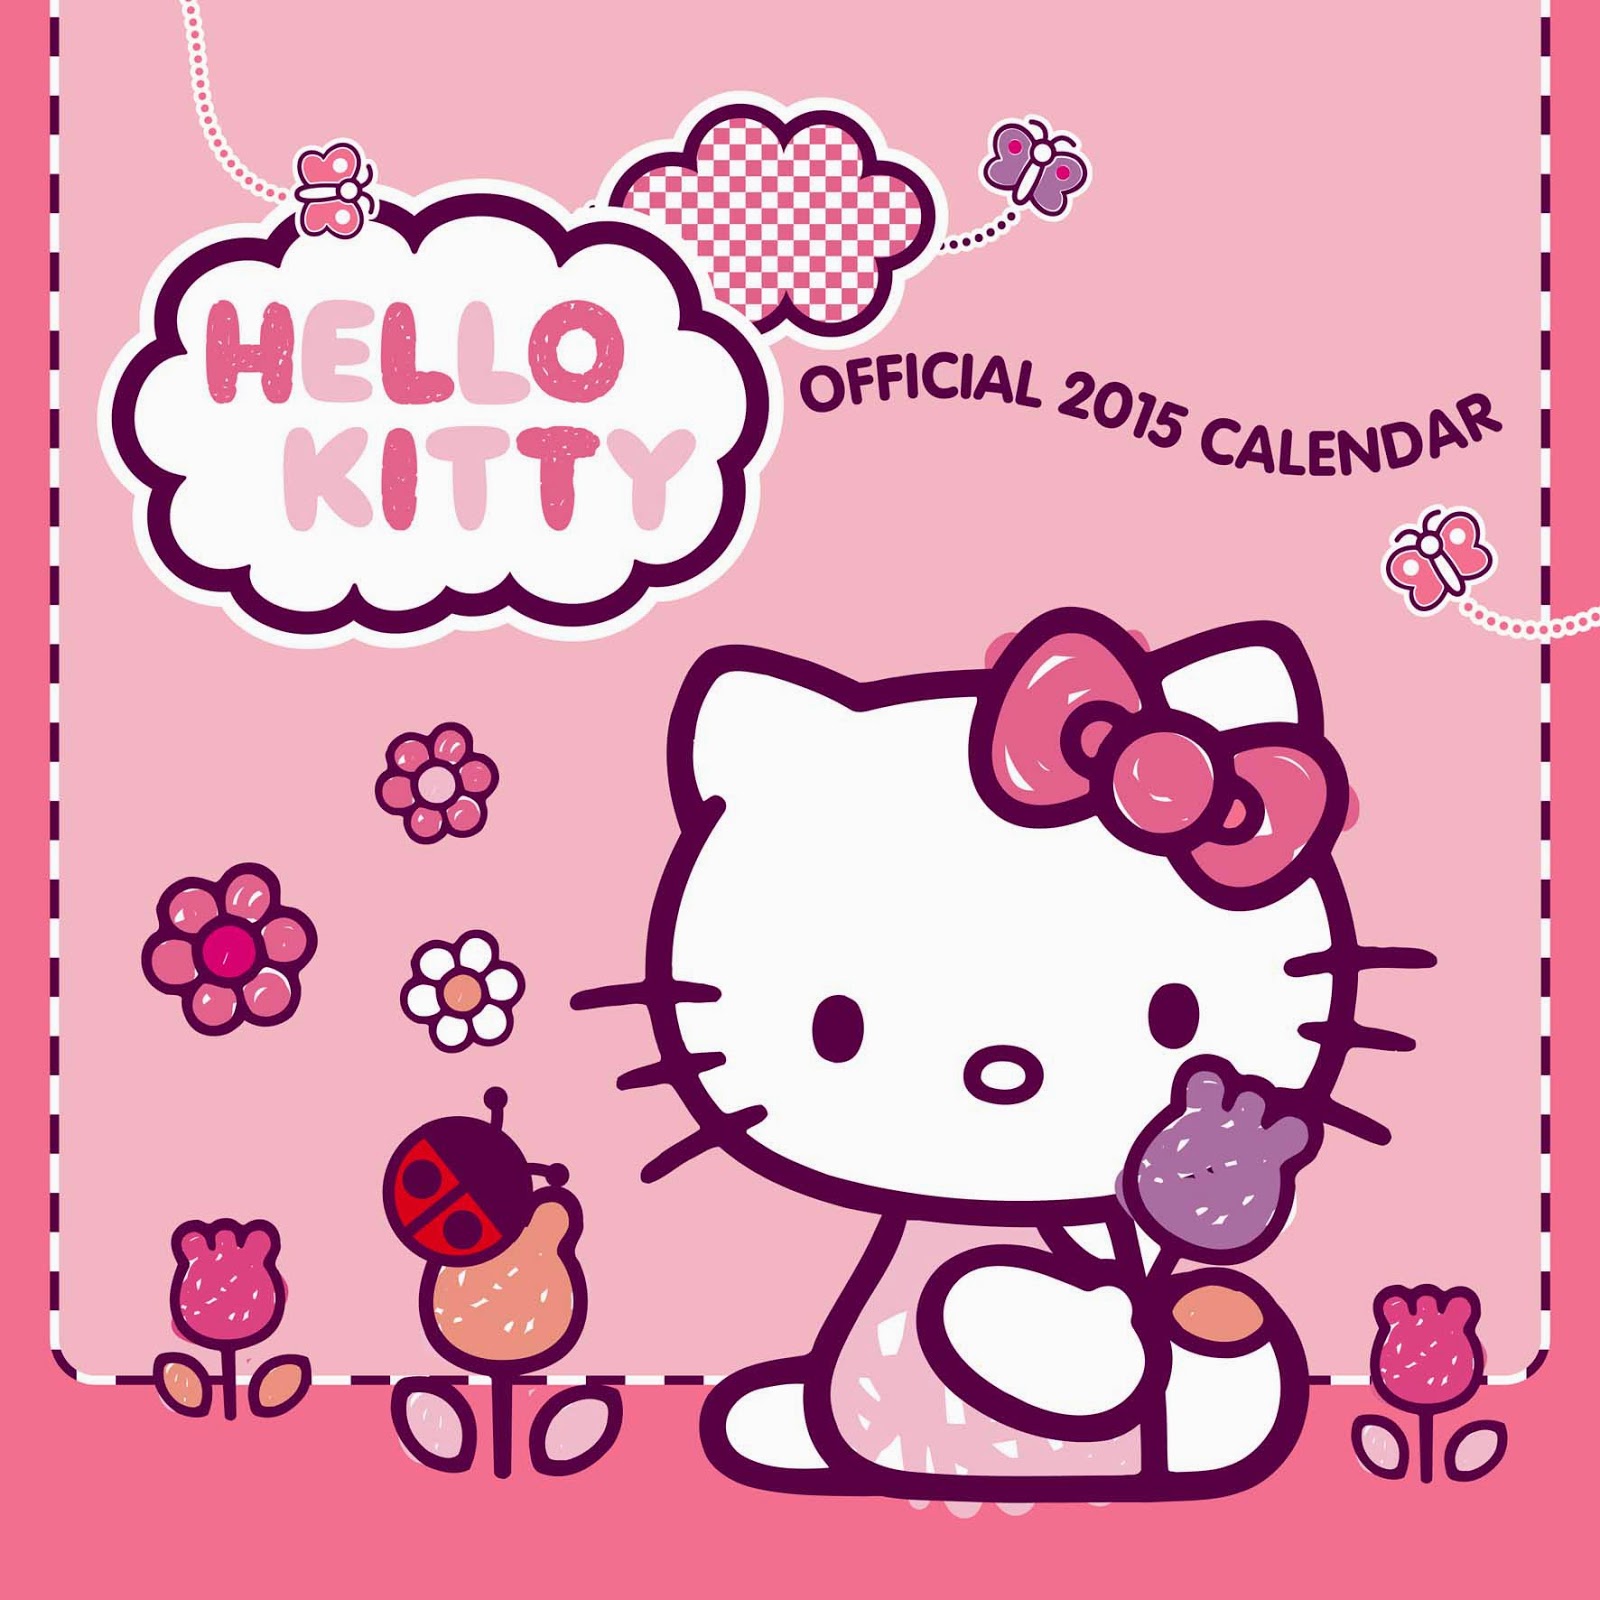 Gambar Wallpaper Hello Kitty Lucu Kampung Wallpaper